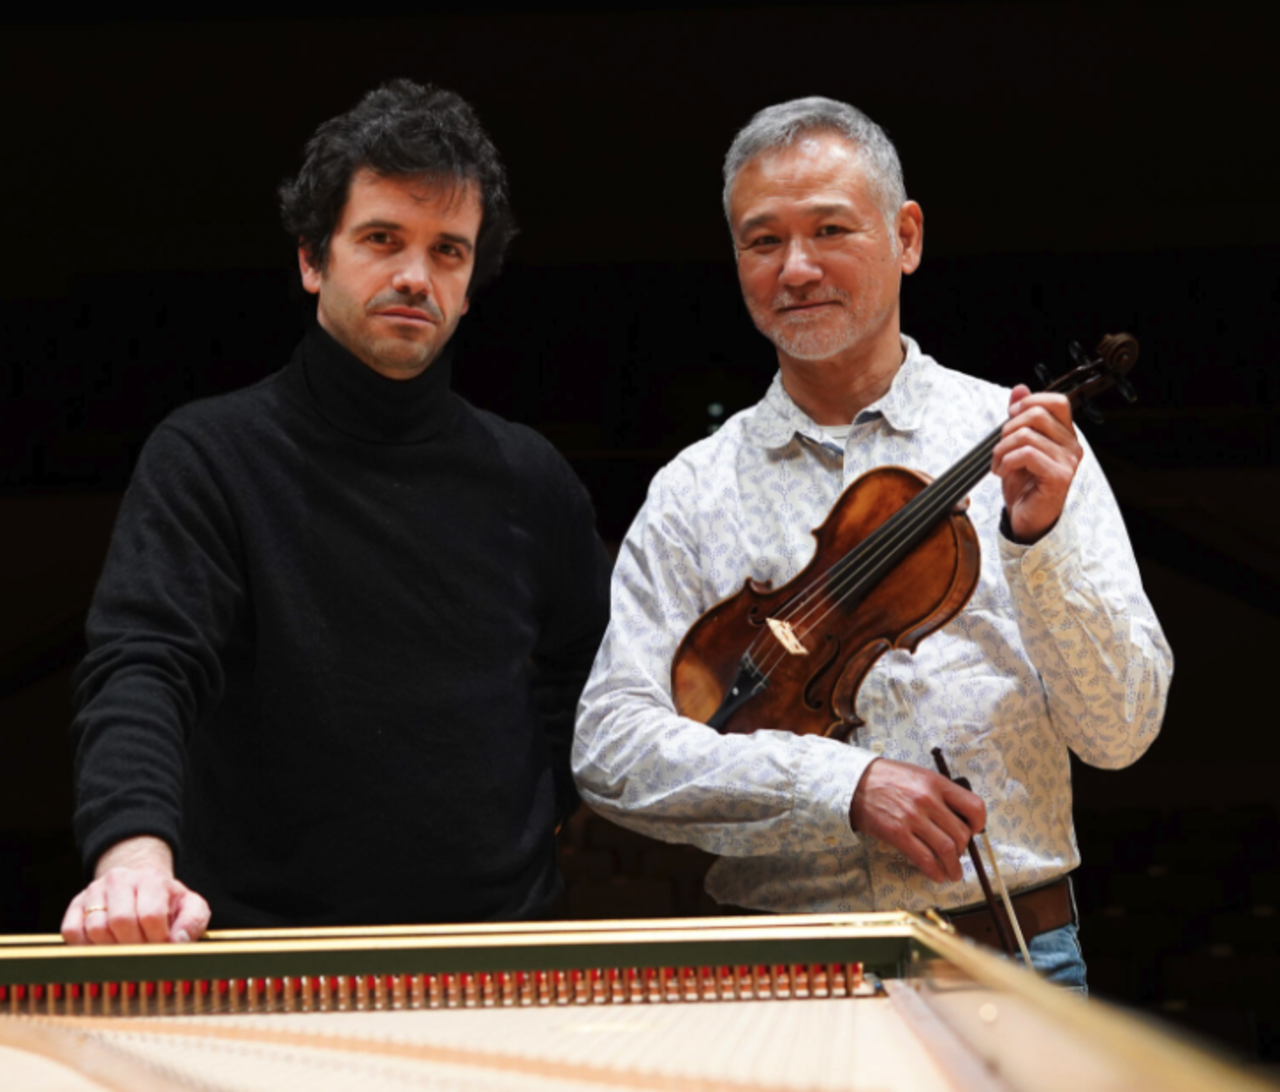 Hiro Kurosaki & Ignacio Prego. “Sonatas de Bach y Haendel”